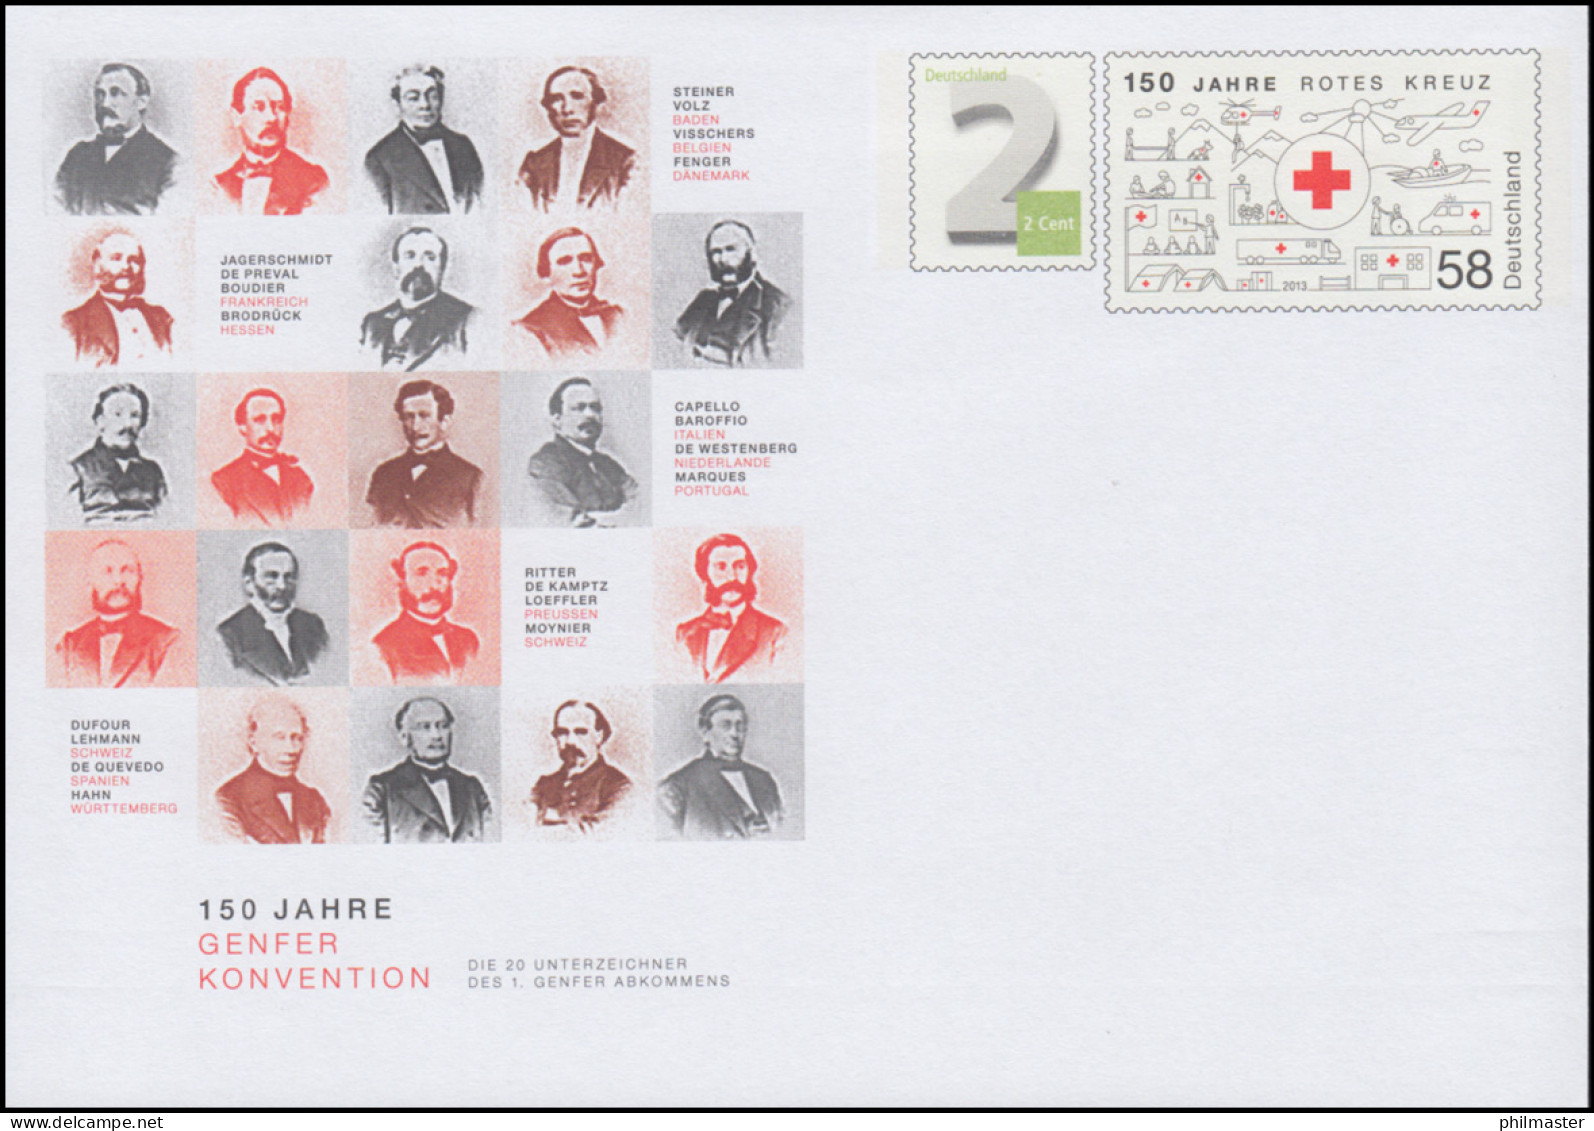 USo 332 150 Jahre Genfer Konvension - Rotes Kreuz 2014, ** - Umschläge - Ungebraucht